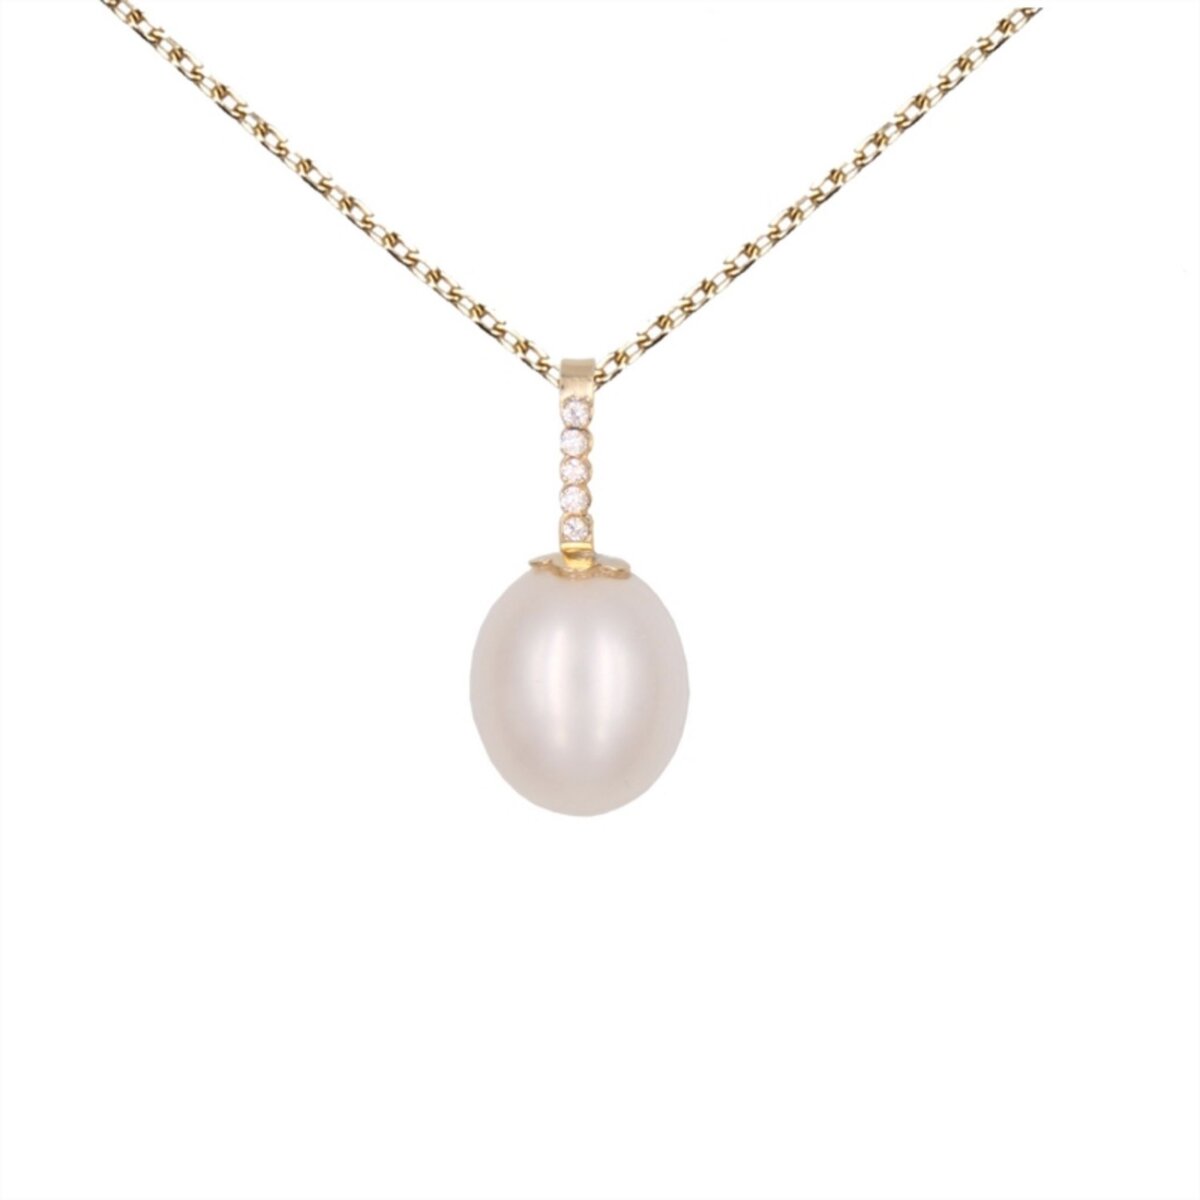 L'ATELIER D'AZUR Collier - Pendentif Perle Or Jaune Pavé de Zirconiums - Femme